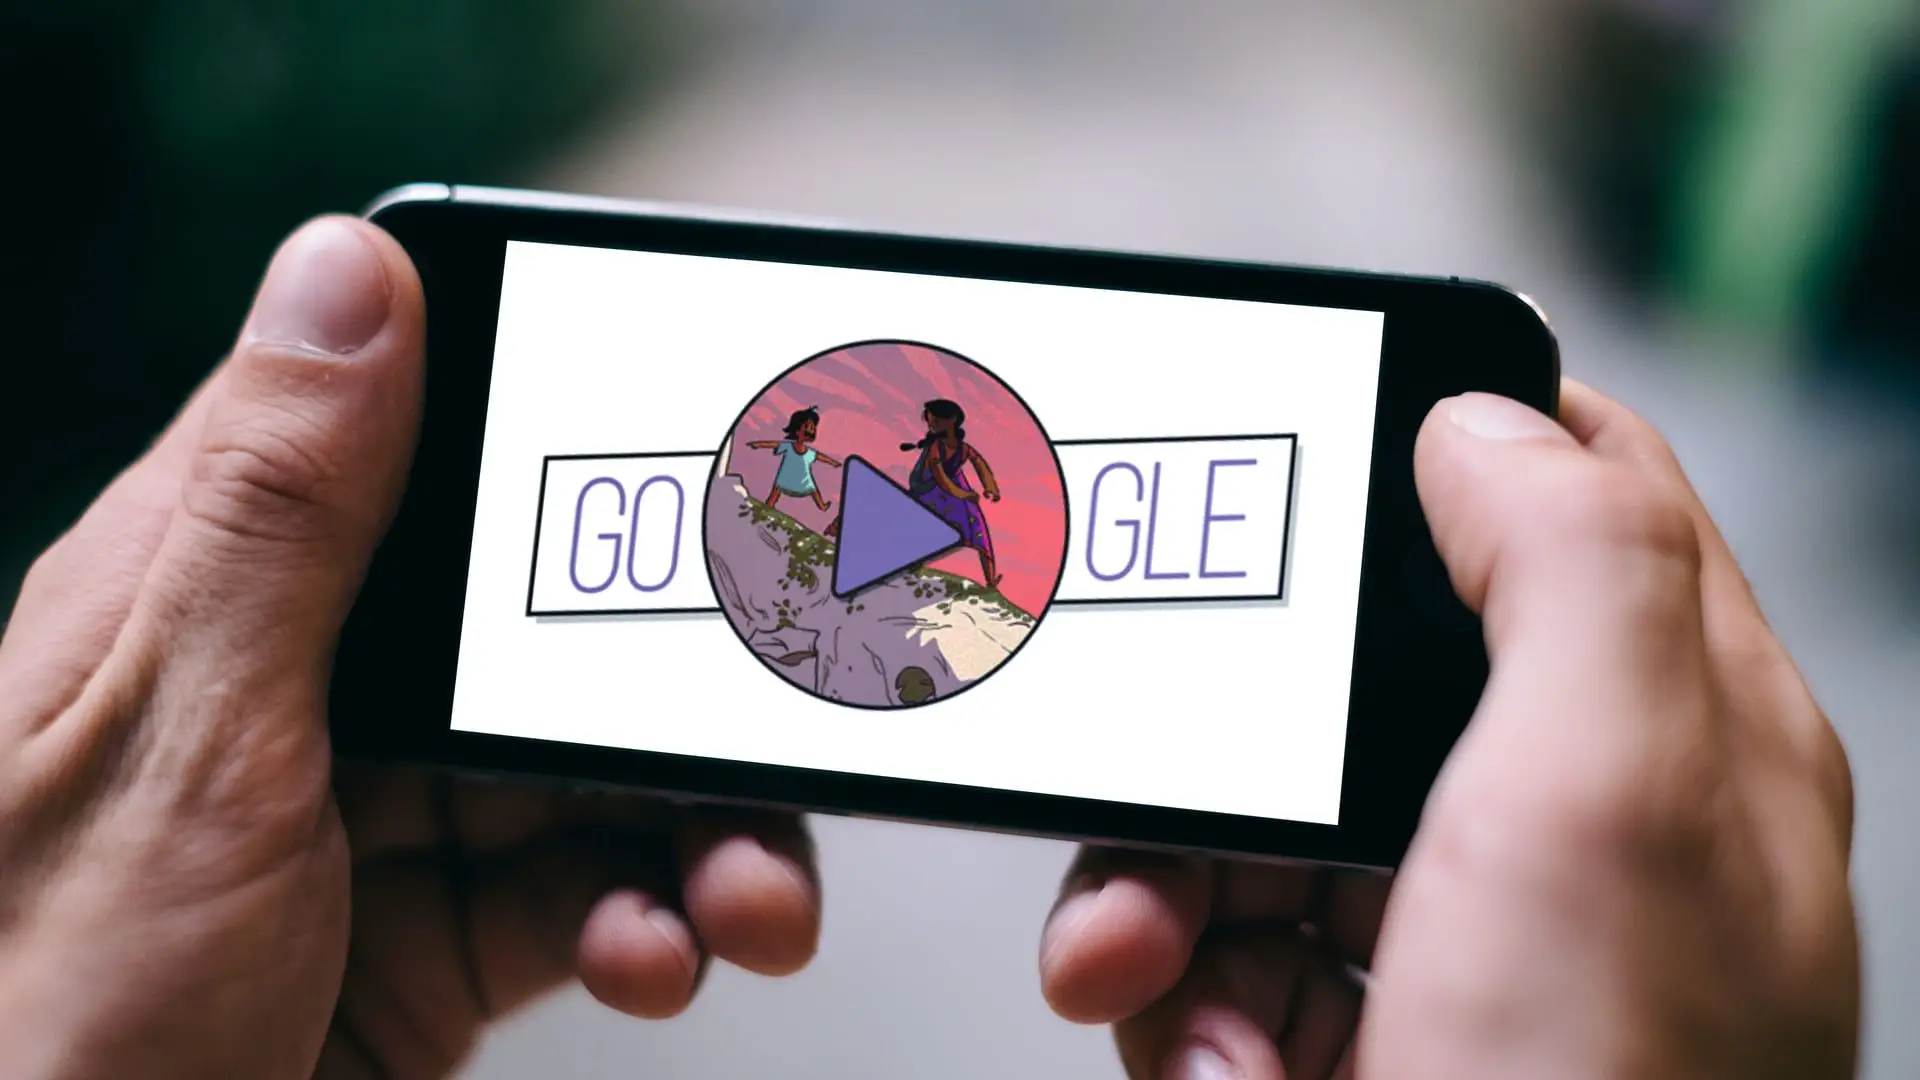 Duas mãos seguram um celular que mostra, na tela, um jogo do Google